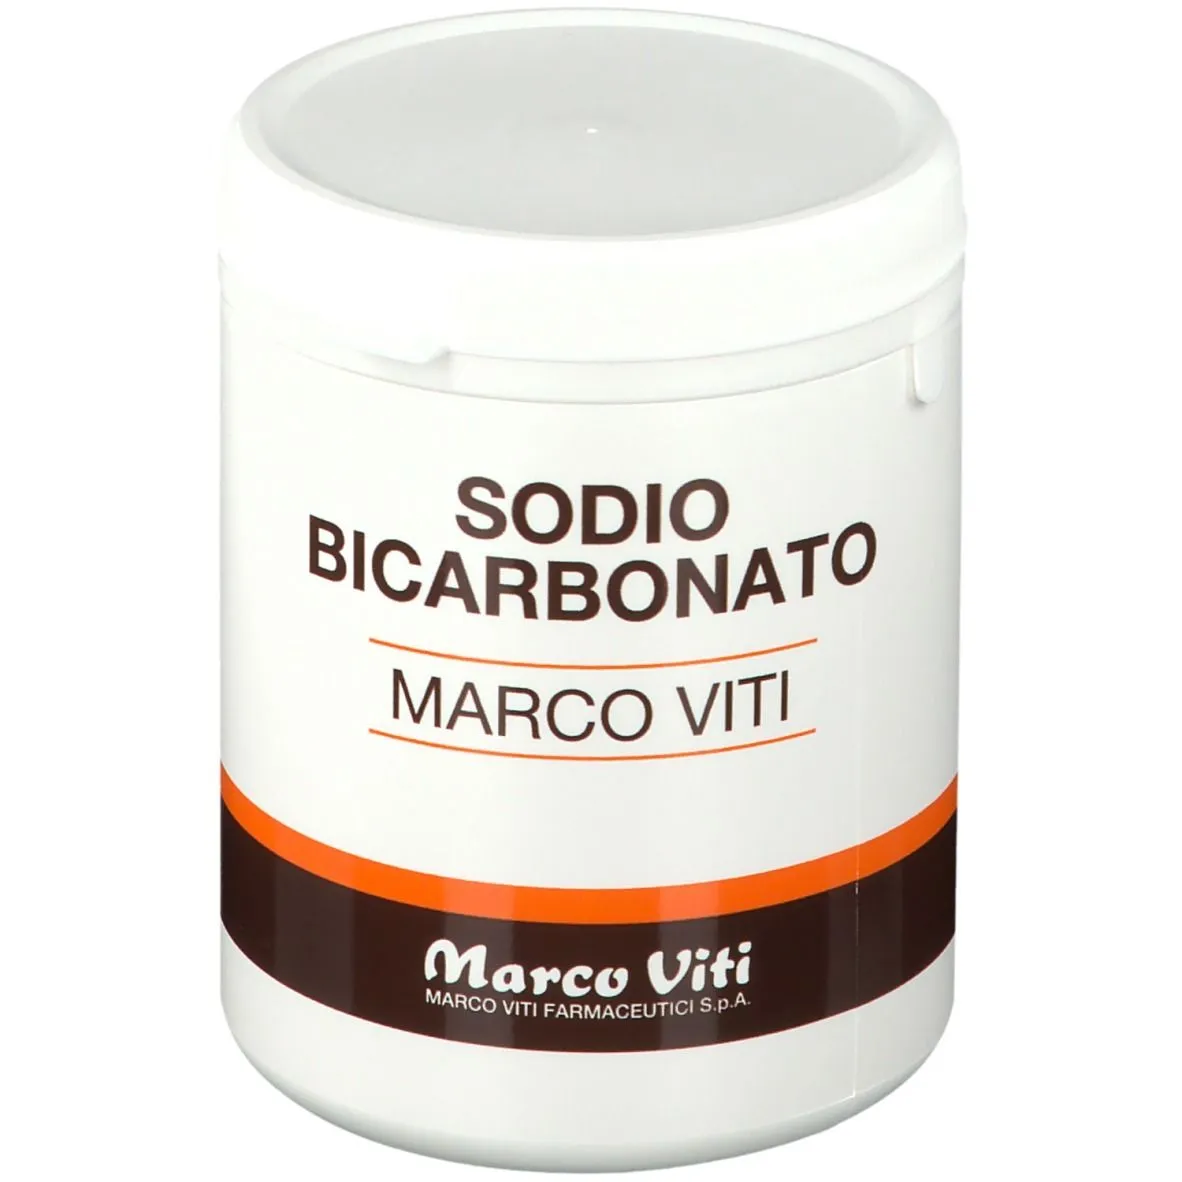 Marco Viti Sodio Bicarbonato